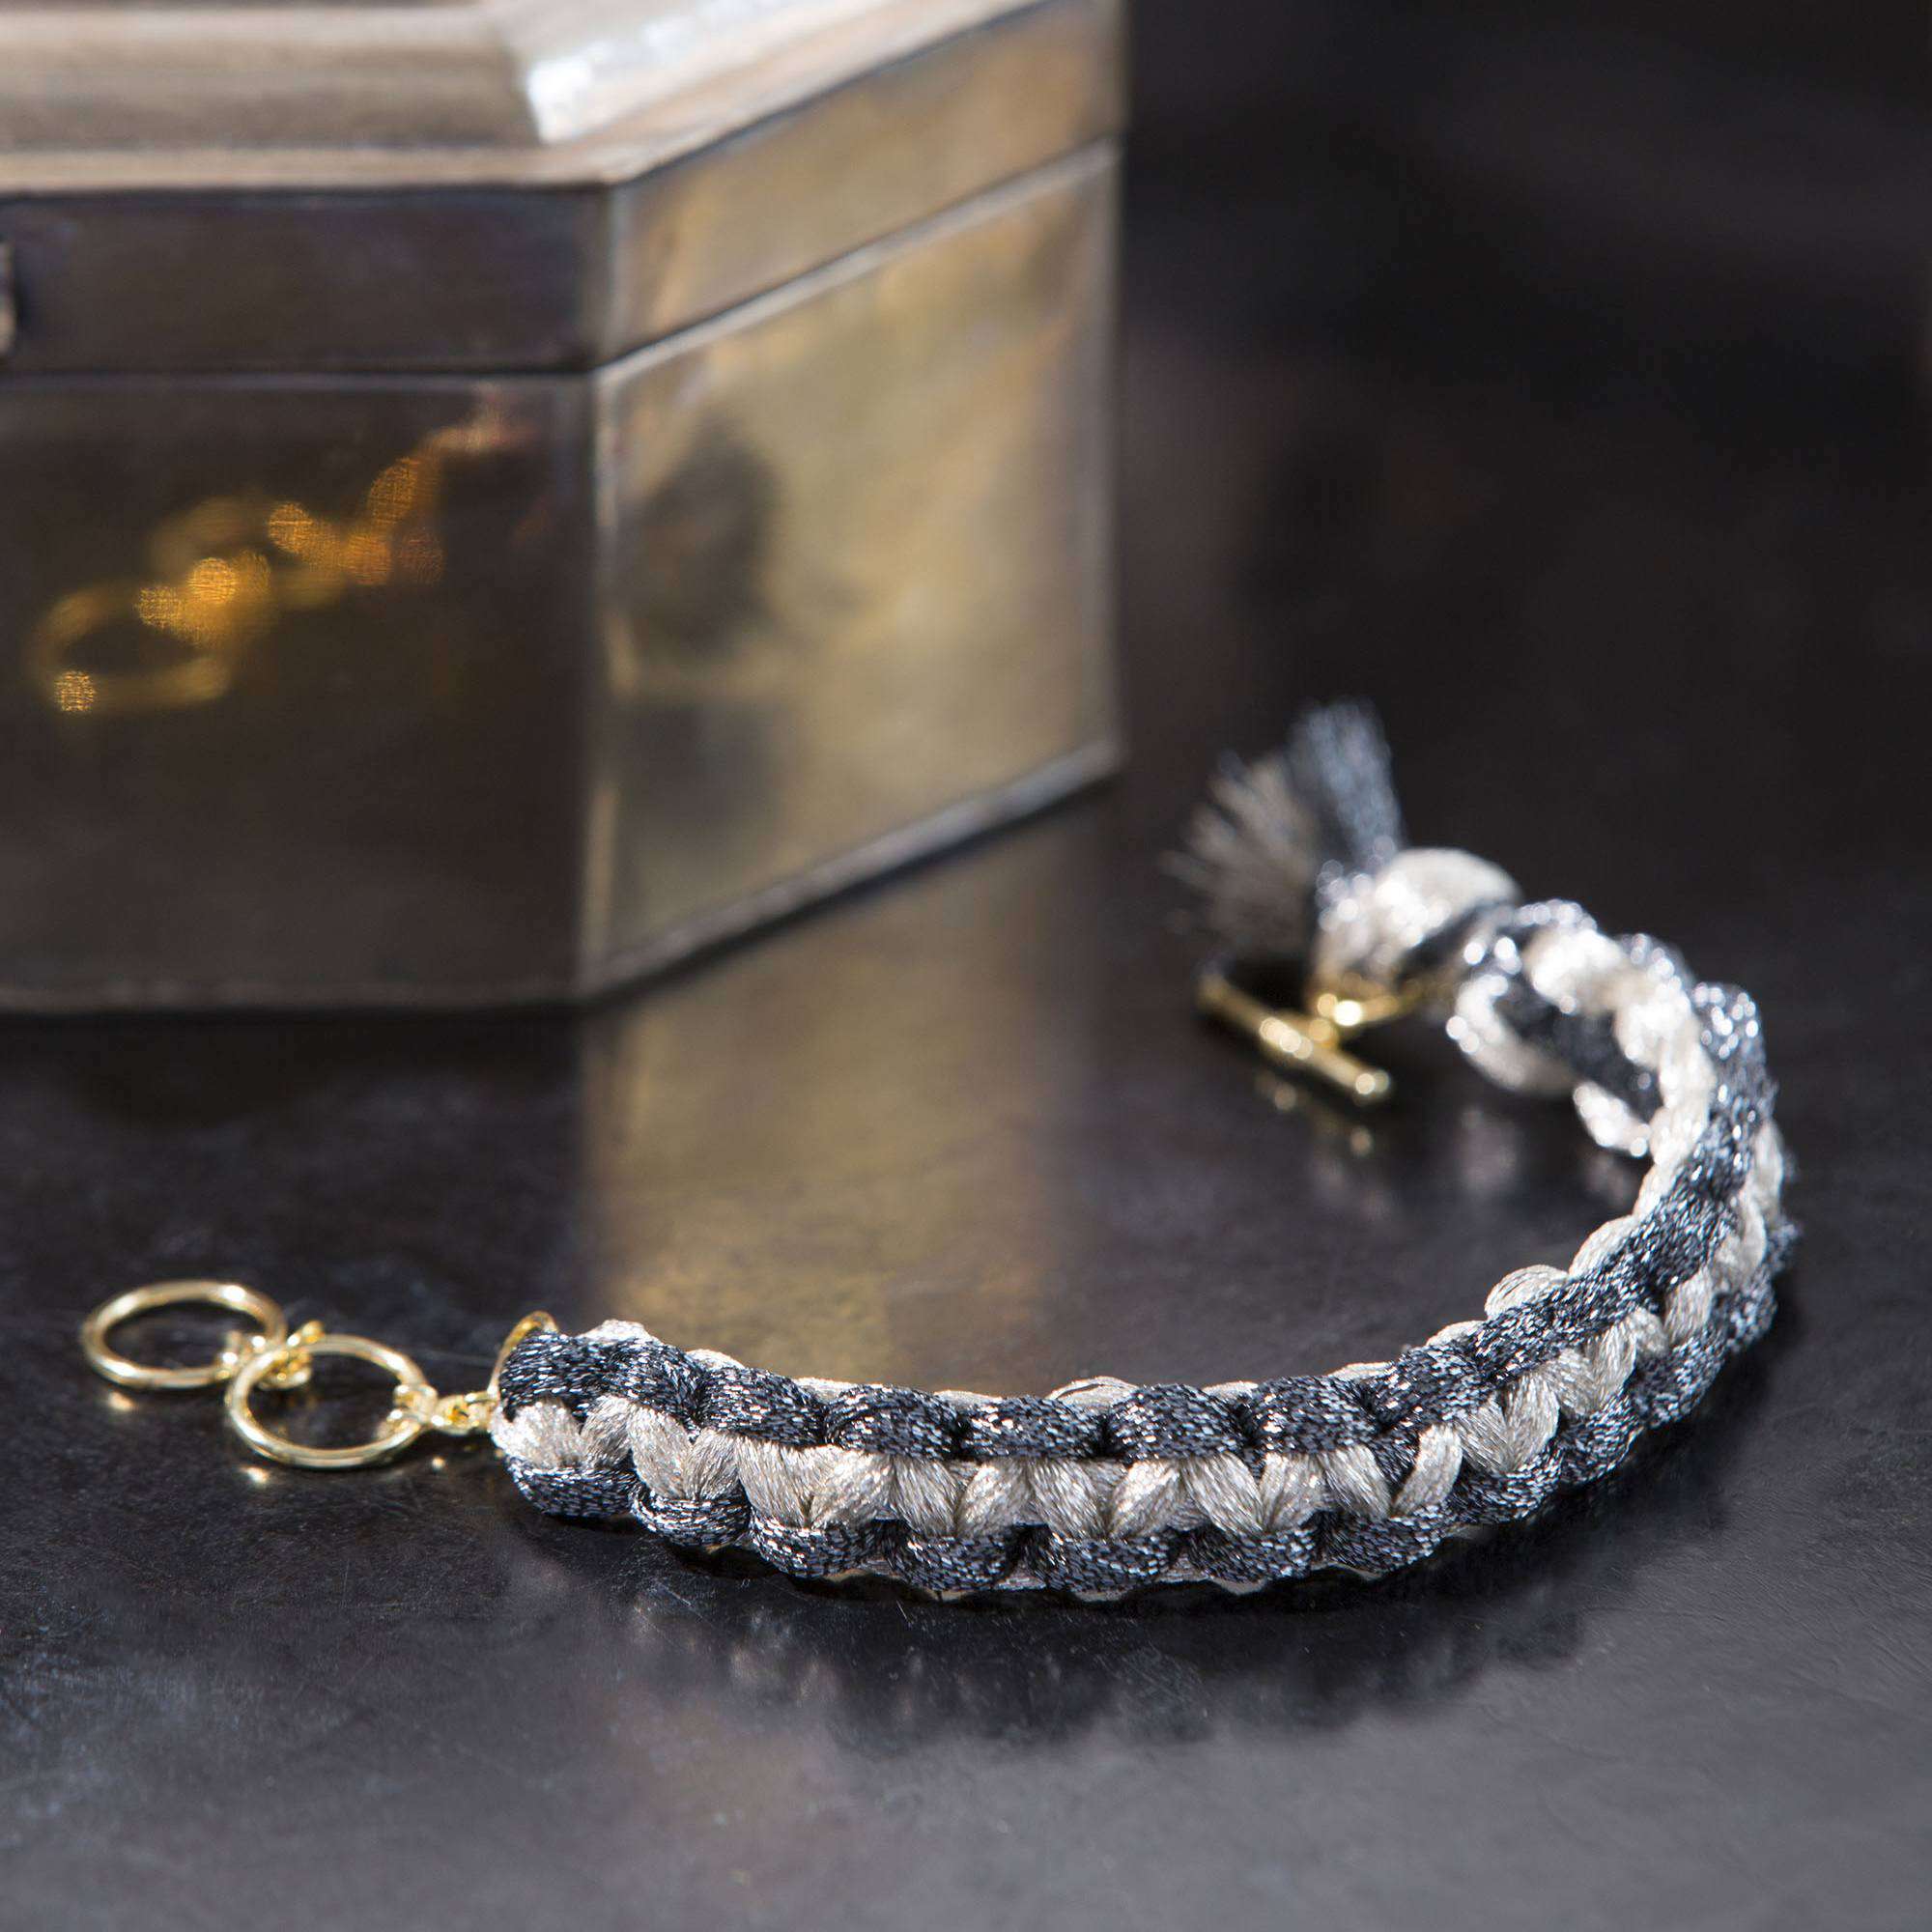 How to Make Wavy Macrame Bracelets « Jewelry :: WonderHowTo